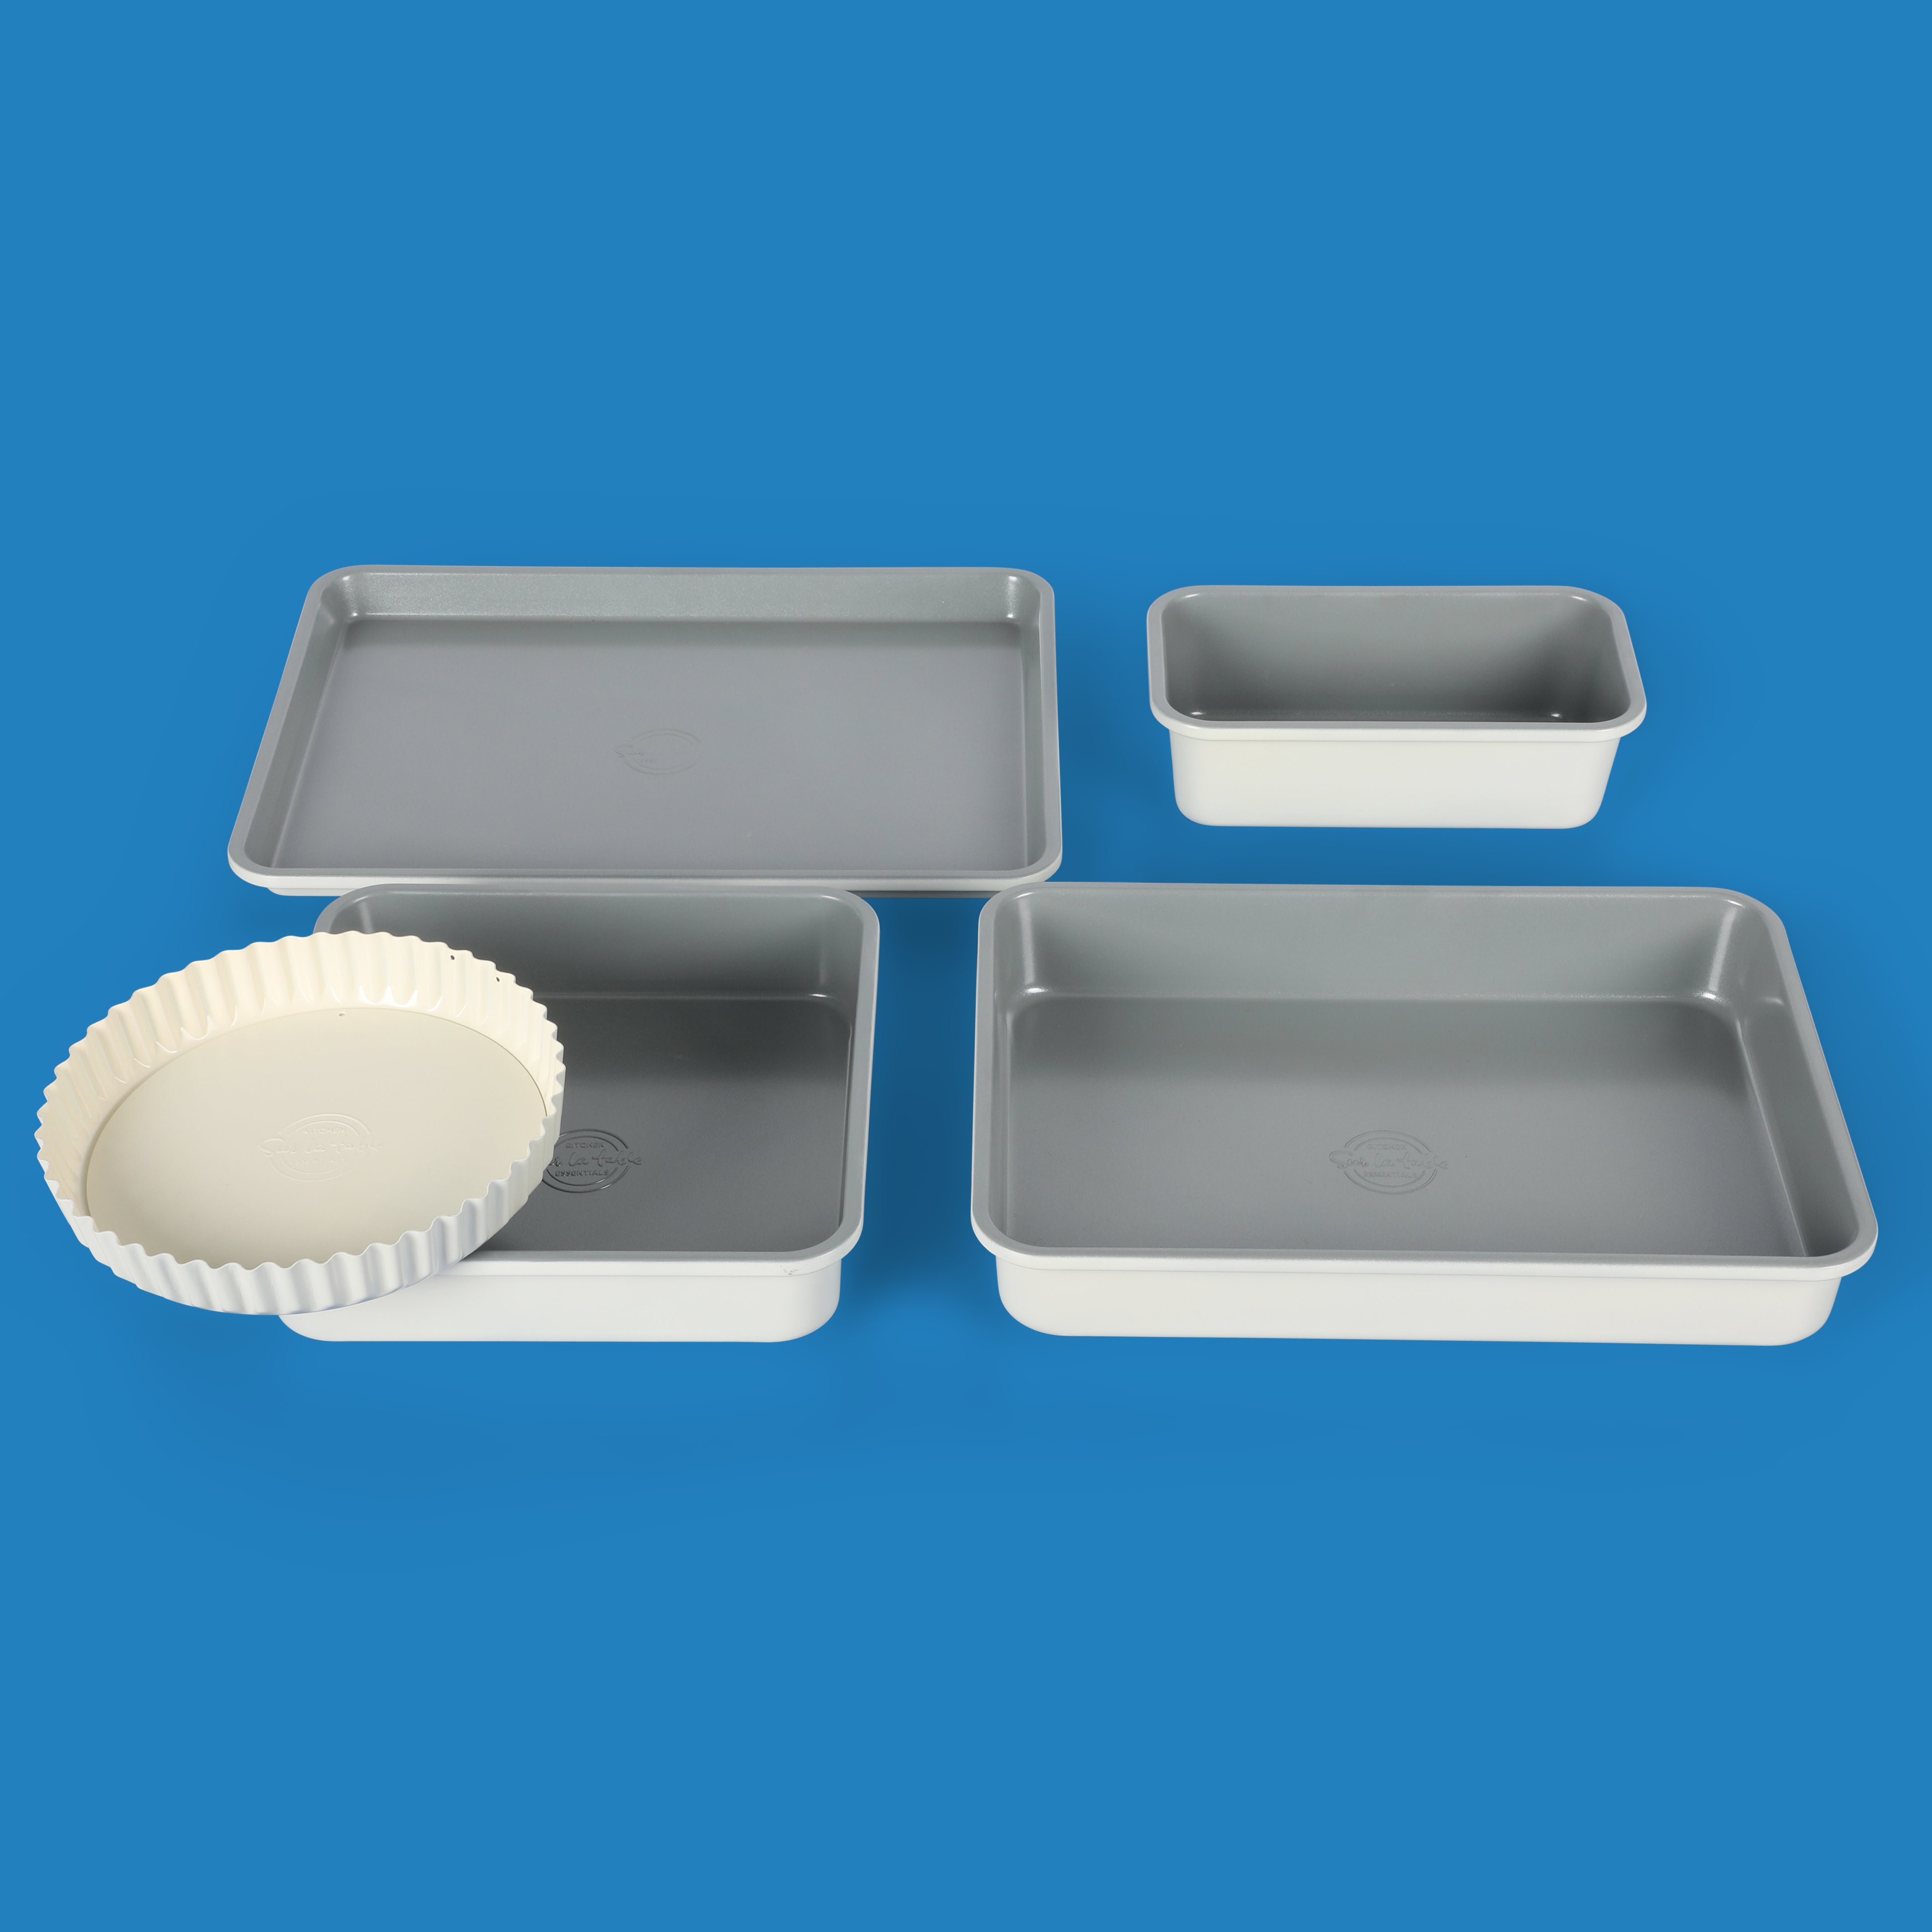 Sur La Table Angelie 10-Piece Enameled Aluminum Cookware Set w/ Premium Grey Ceramic Interior Matte Marine Blue